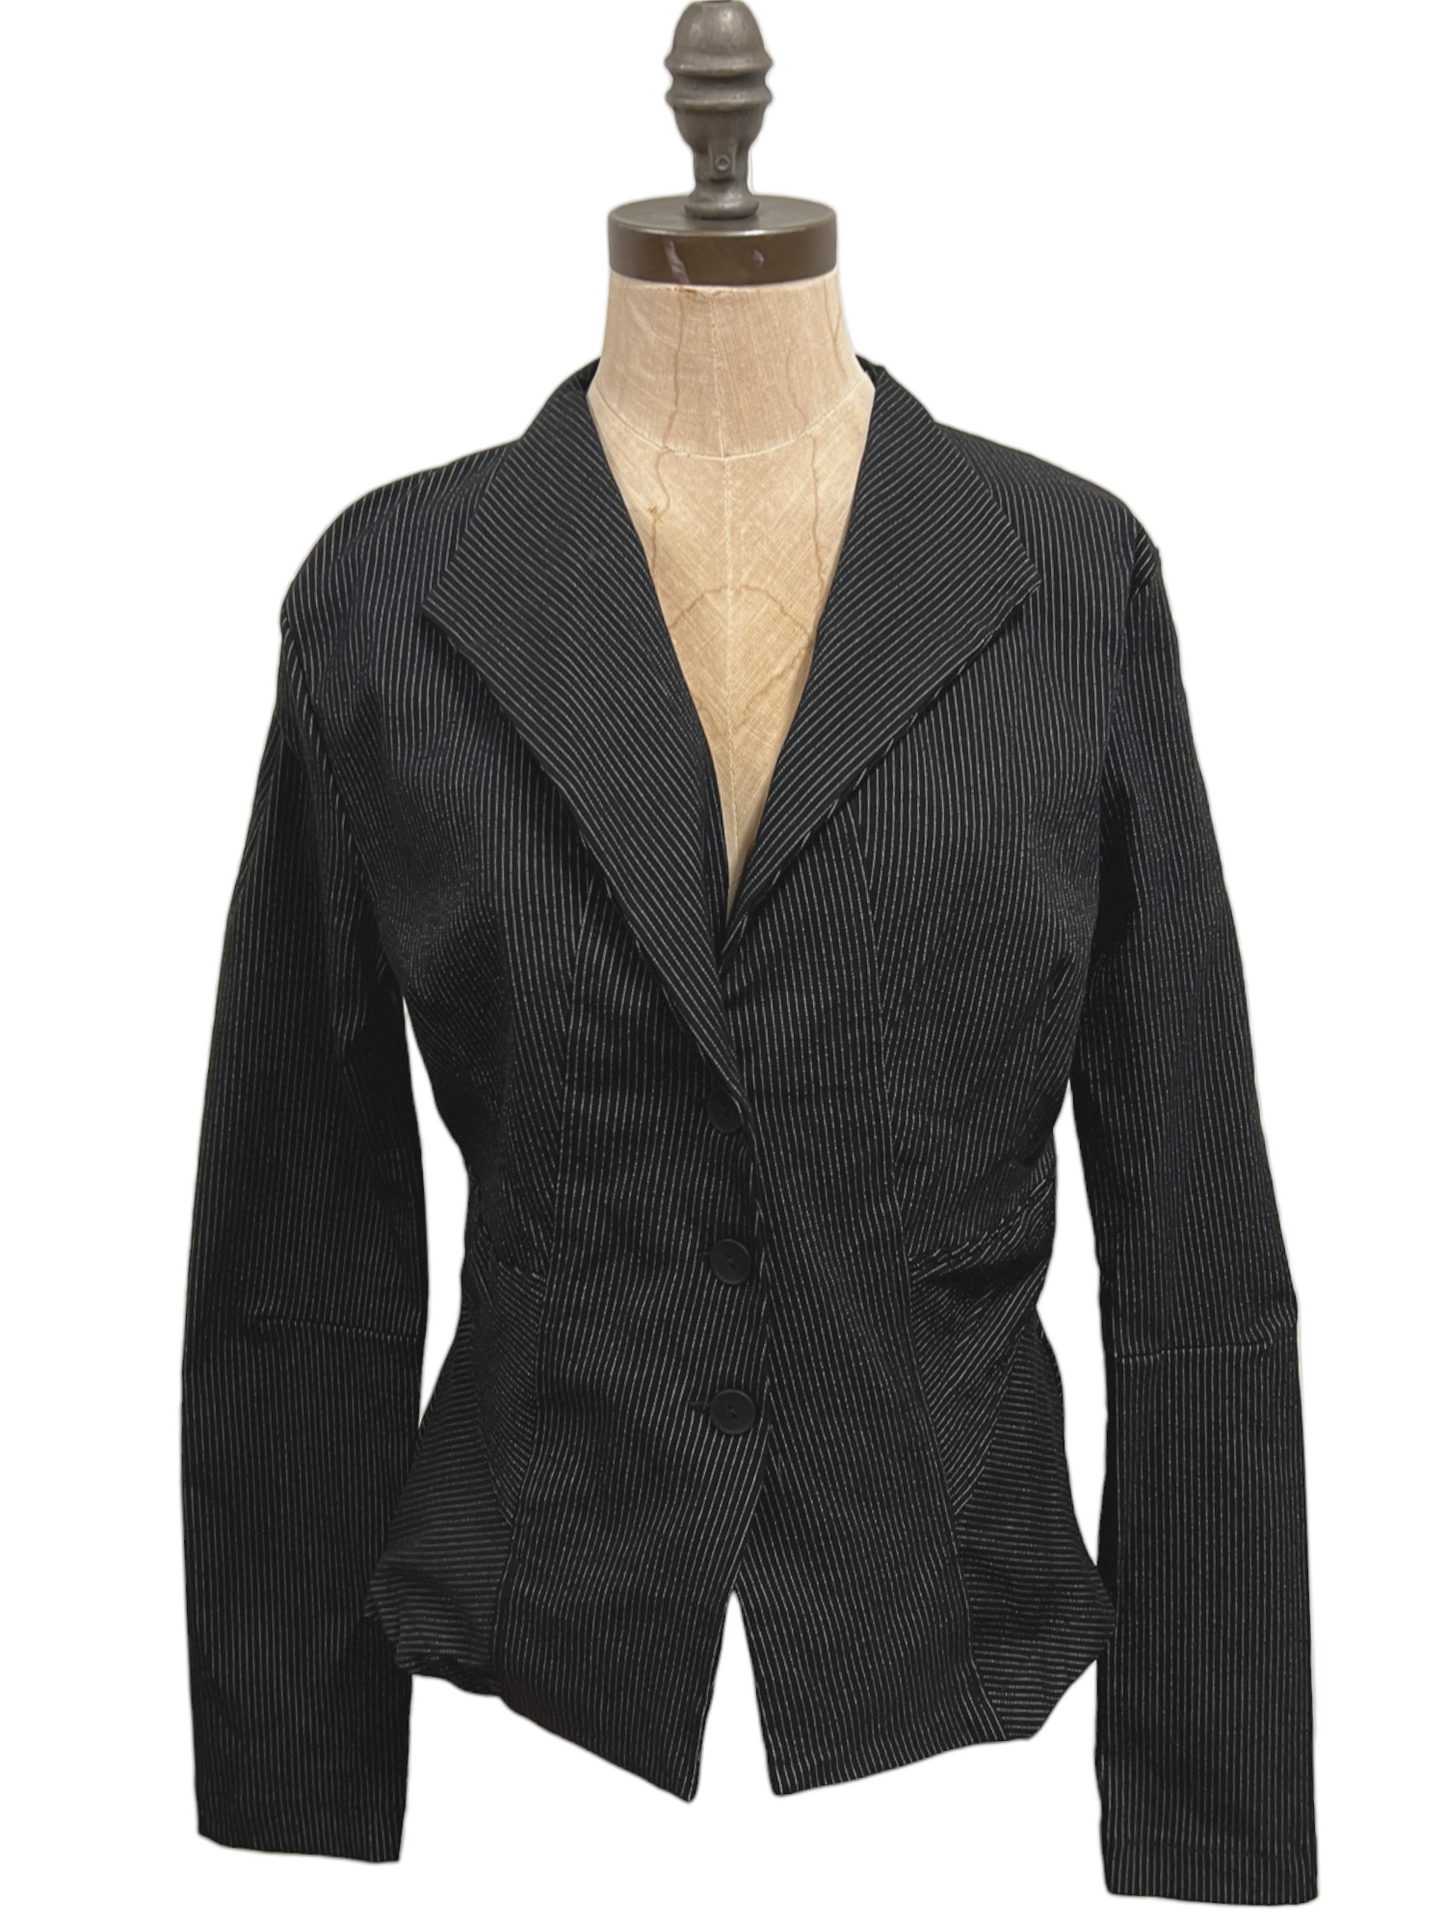 Rousseau Jacket in Black Stripe